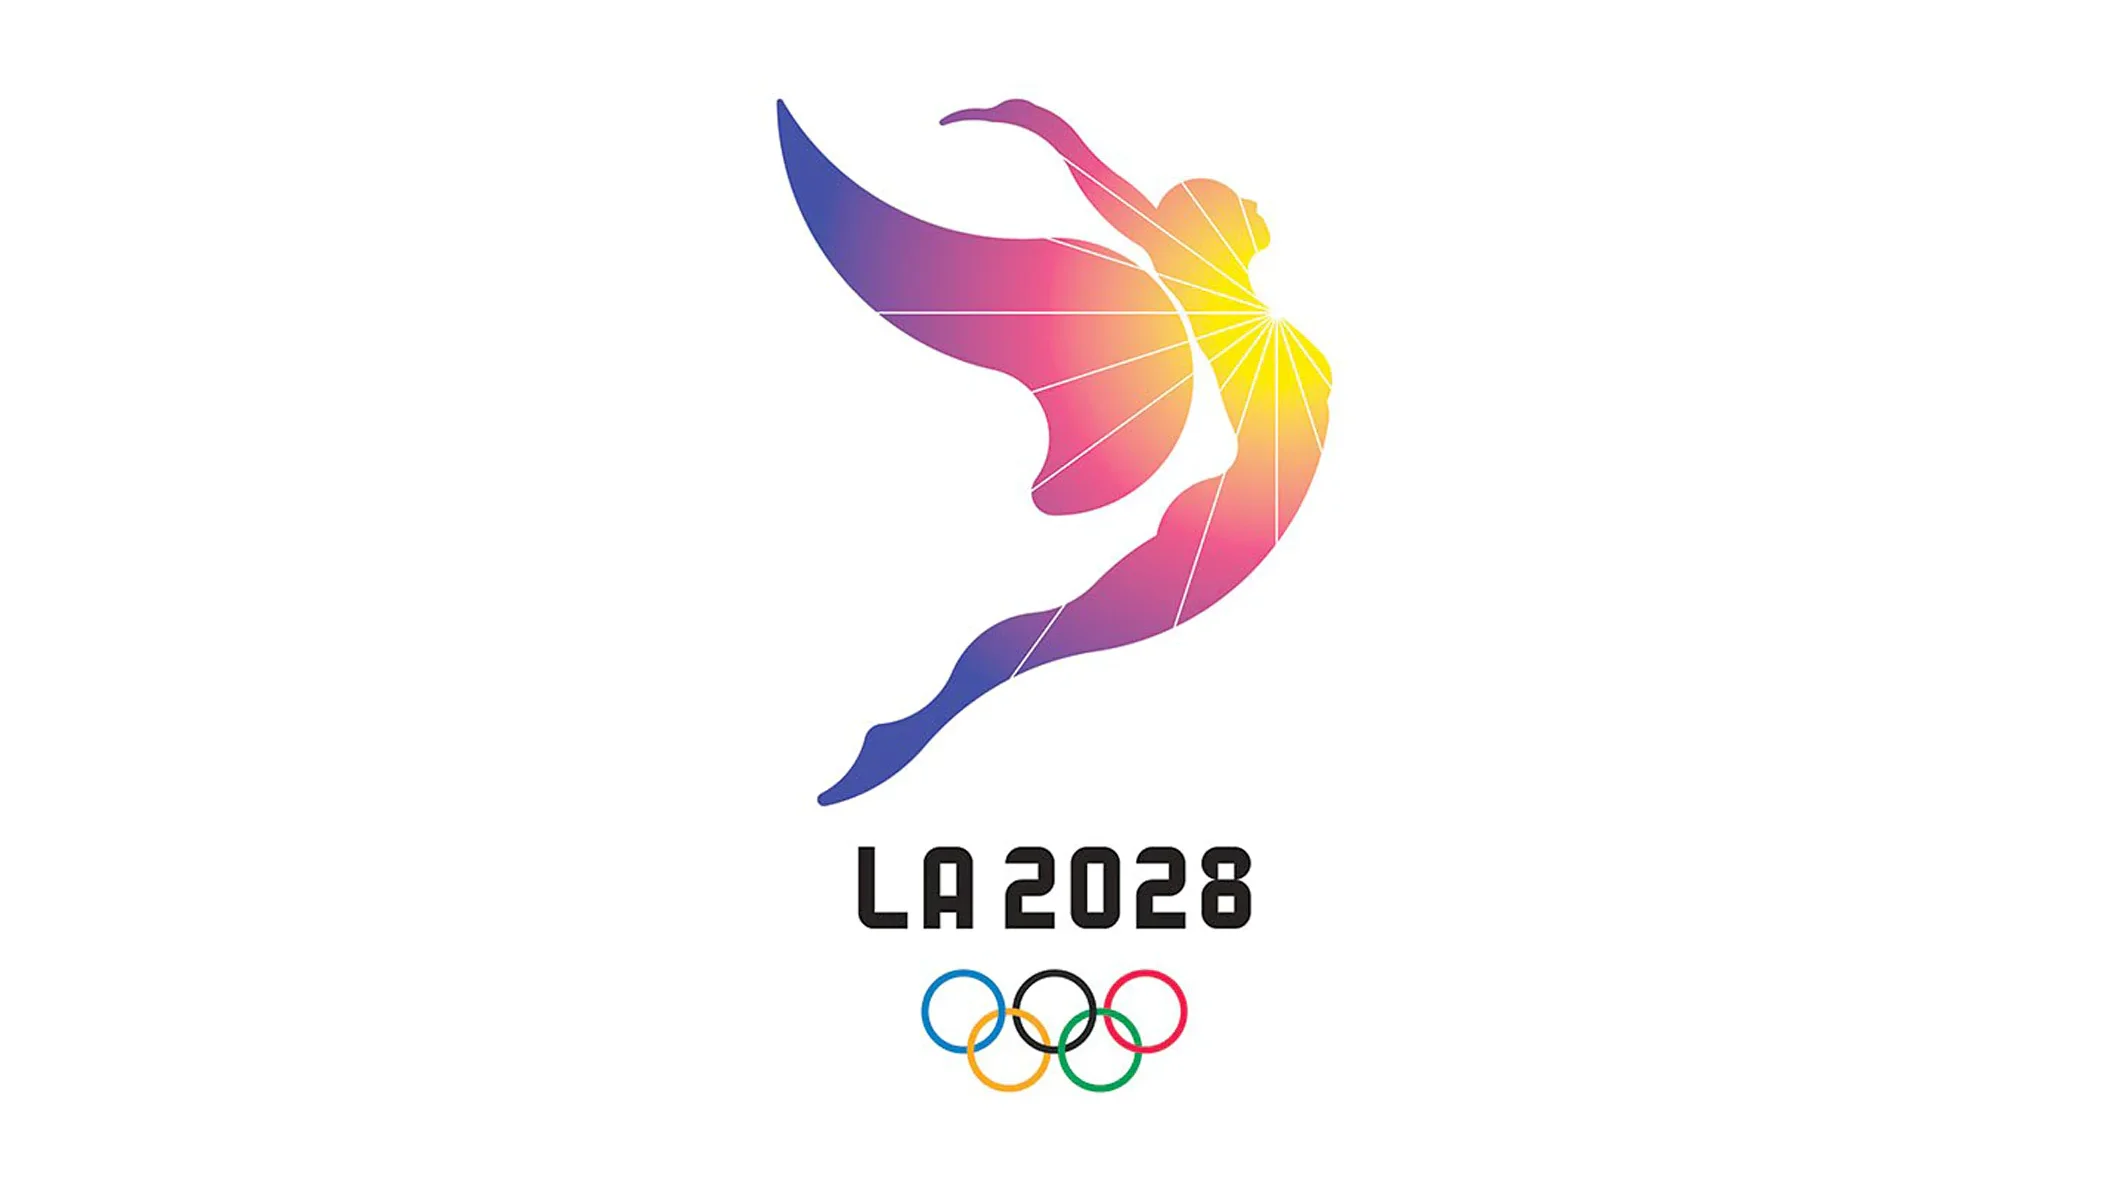 Le padel helt sikkert fraværende fra OL i 2028